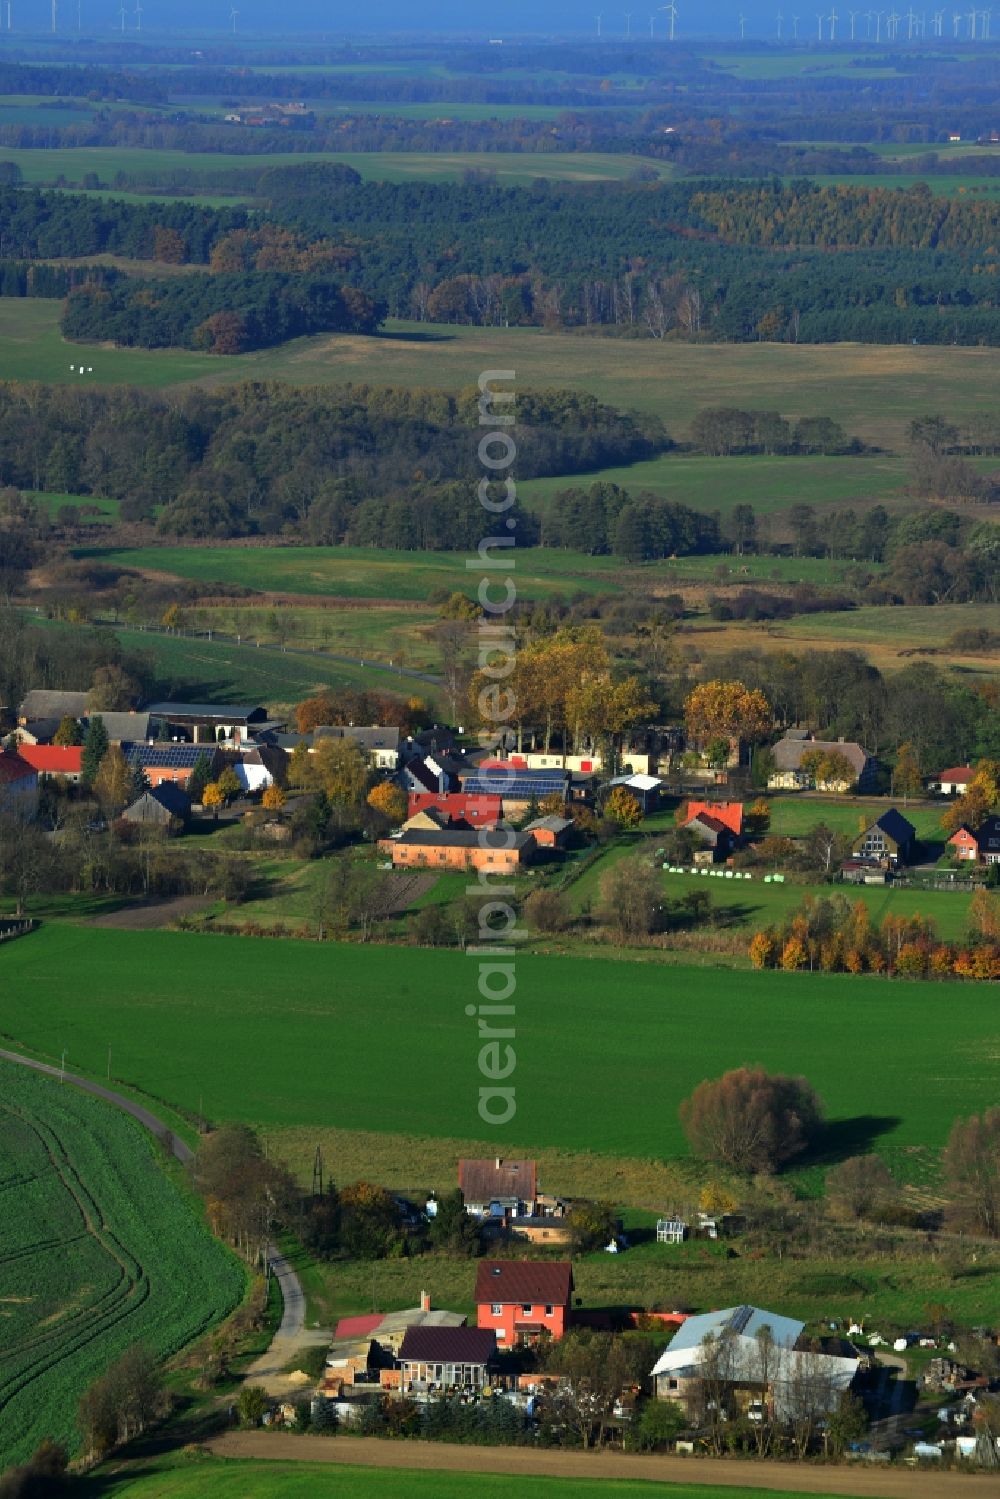 Flieth-Stegelitz from above - Village core Flieth-Stegelitz in Brandenburg